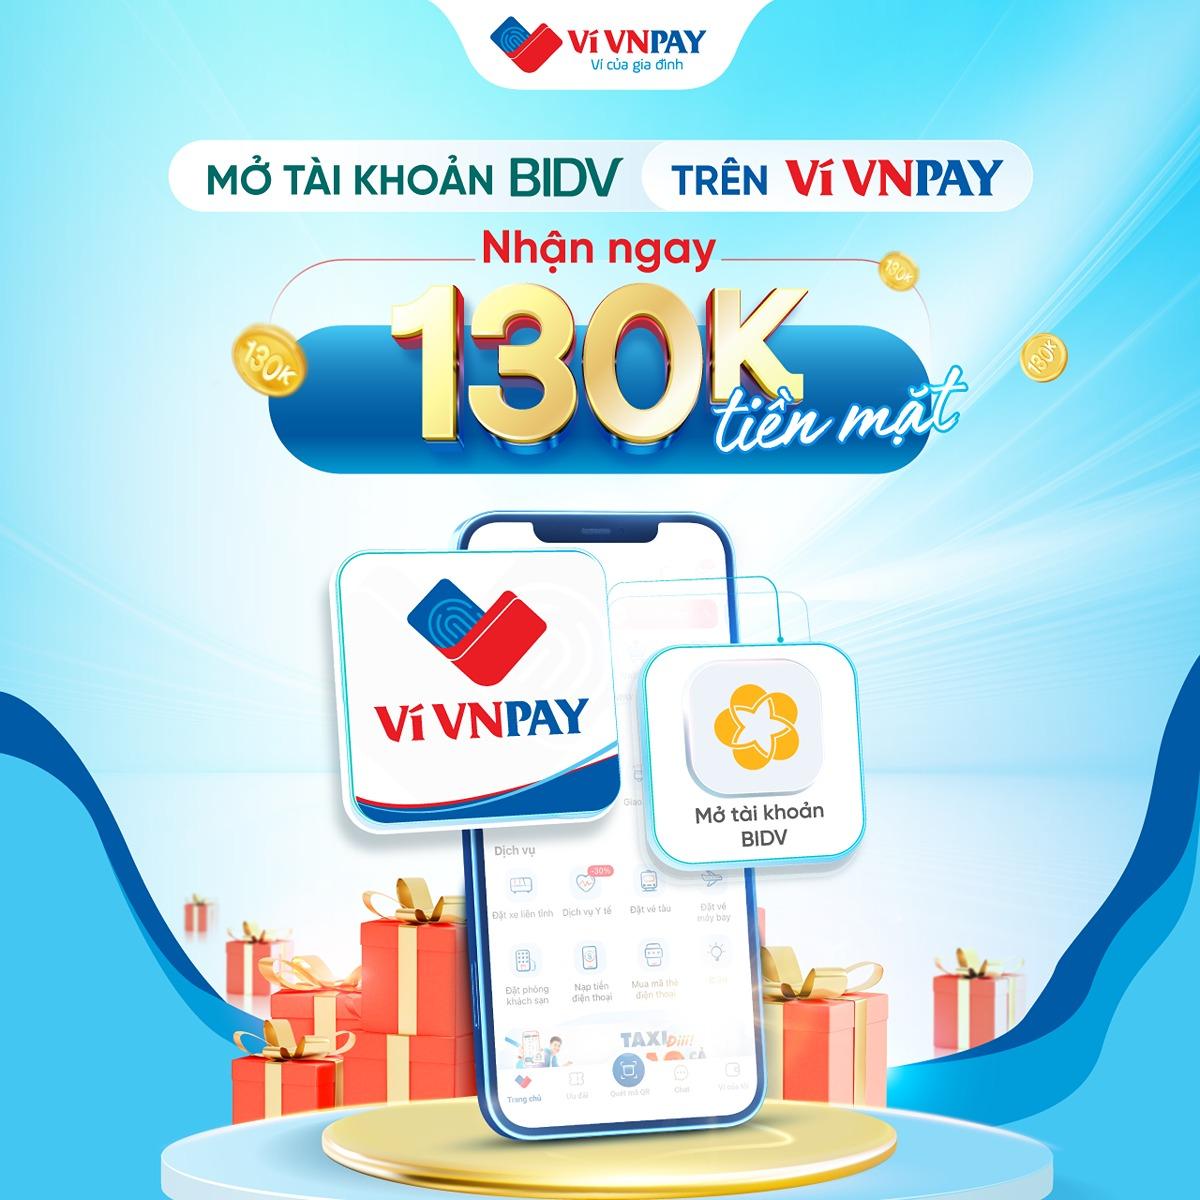 Rinh quà 130.000 đồng khi mở tài khoản BIDV trên ví VNPAY